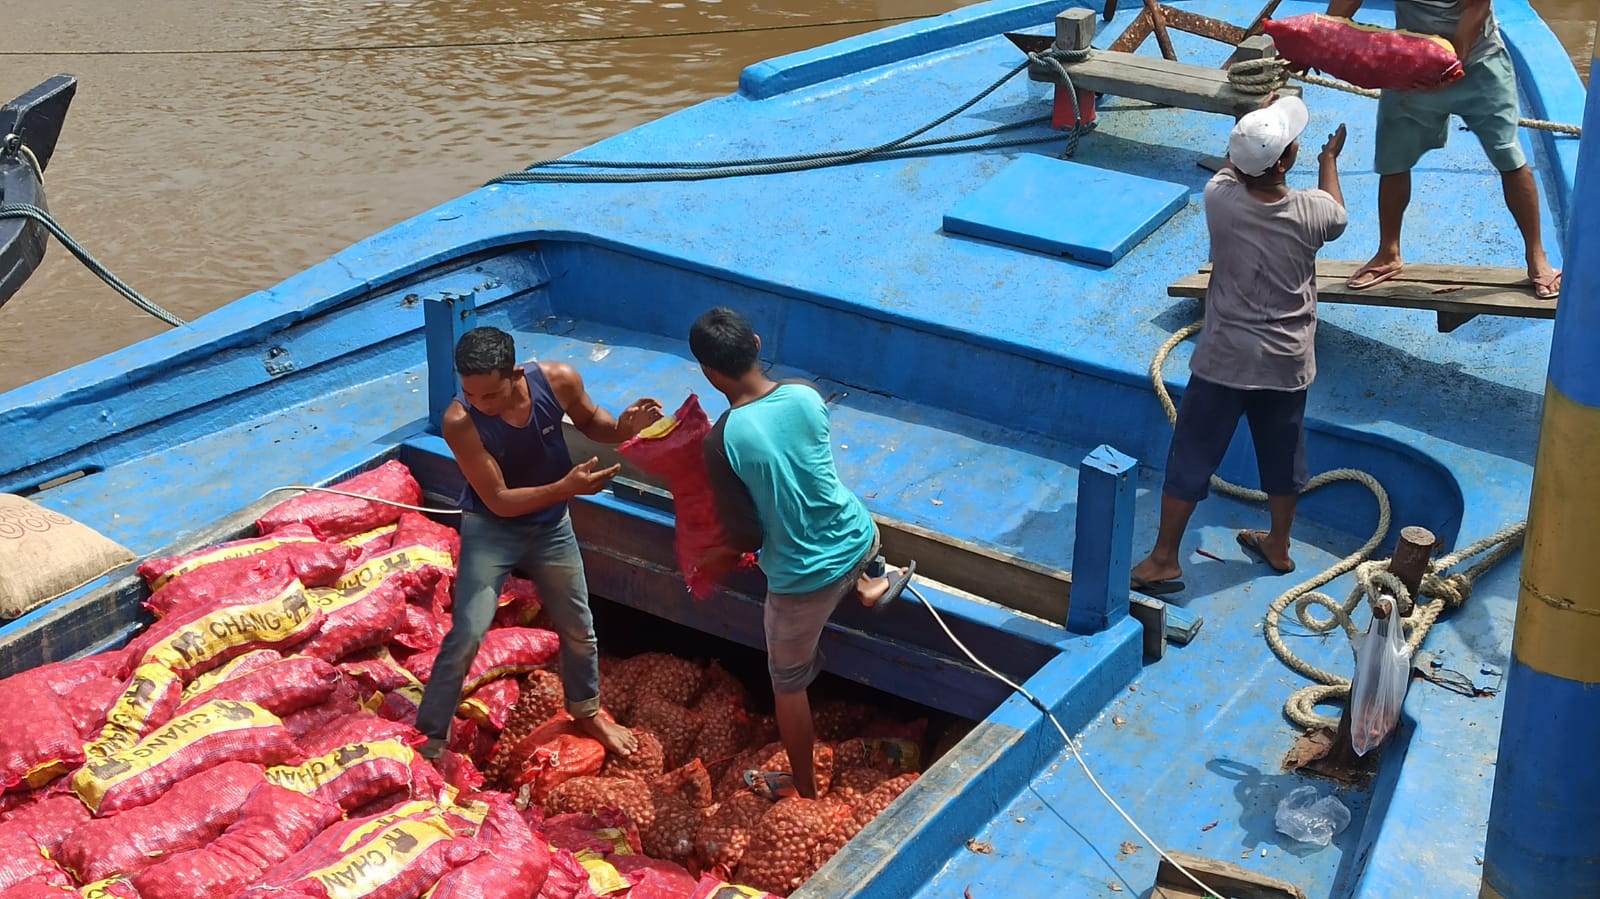 Polisi Gagalkan Penyelundupan 20 Ton Bawang Merah dan Cabai Kering di Meranti